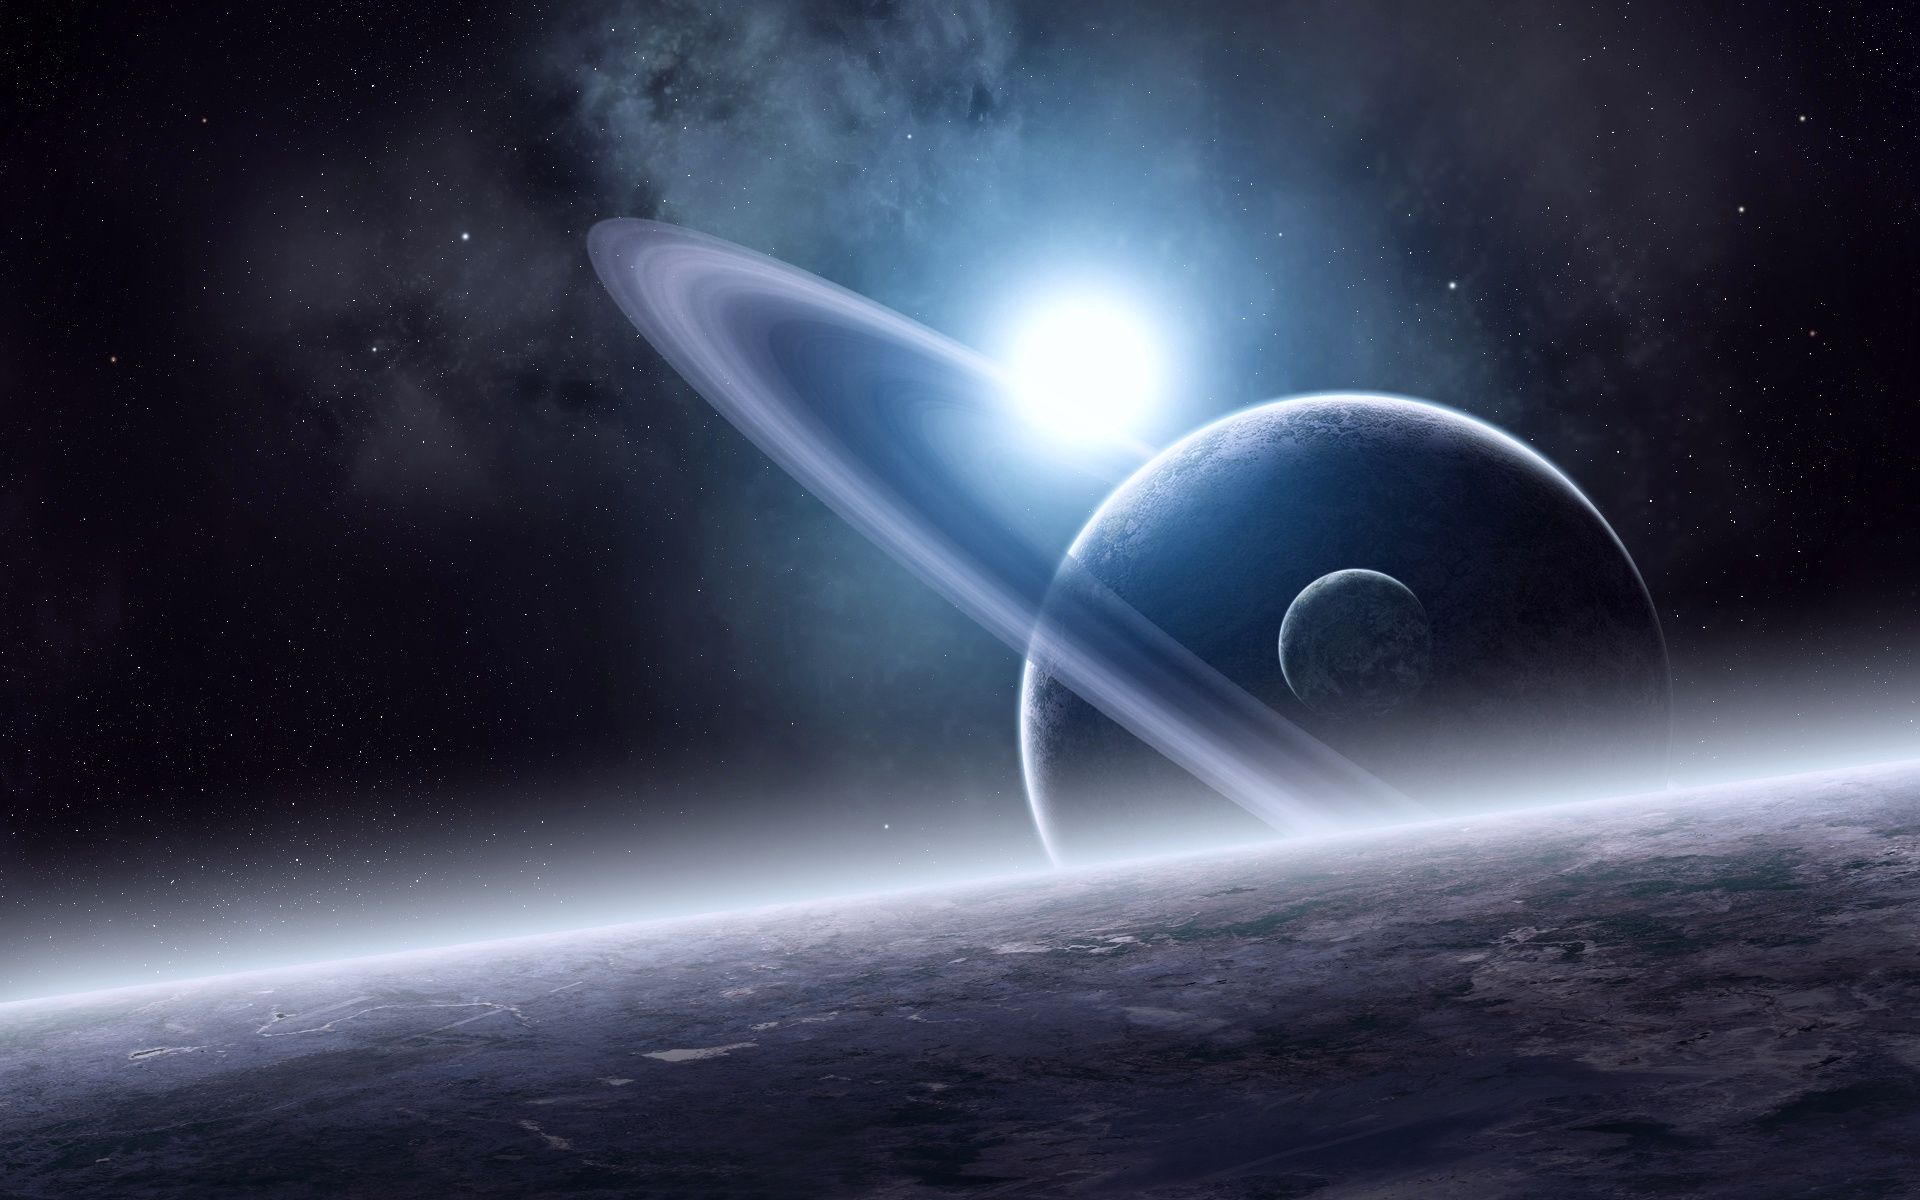 Обои Сатурн земля солнце картинки на рабочий стол на тему Космос - скачать скачать